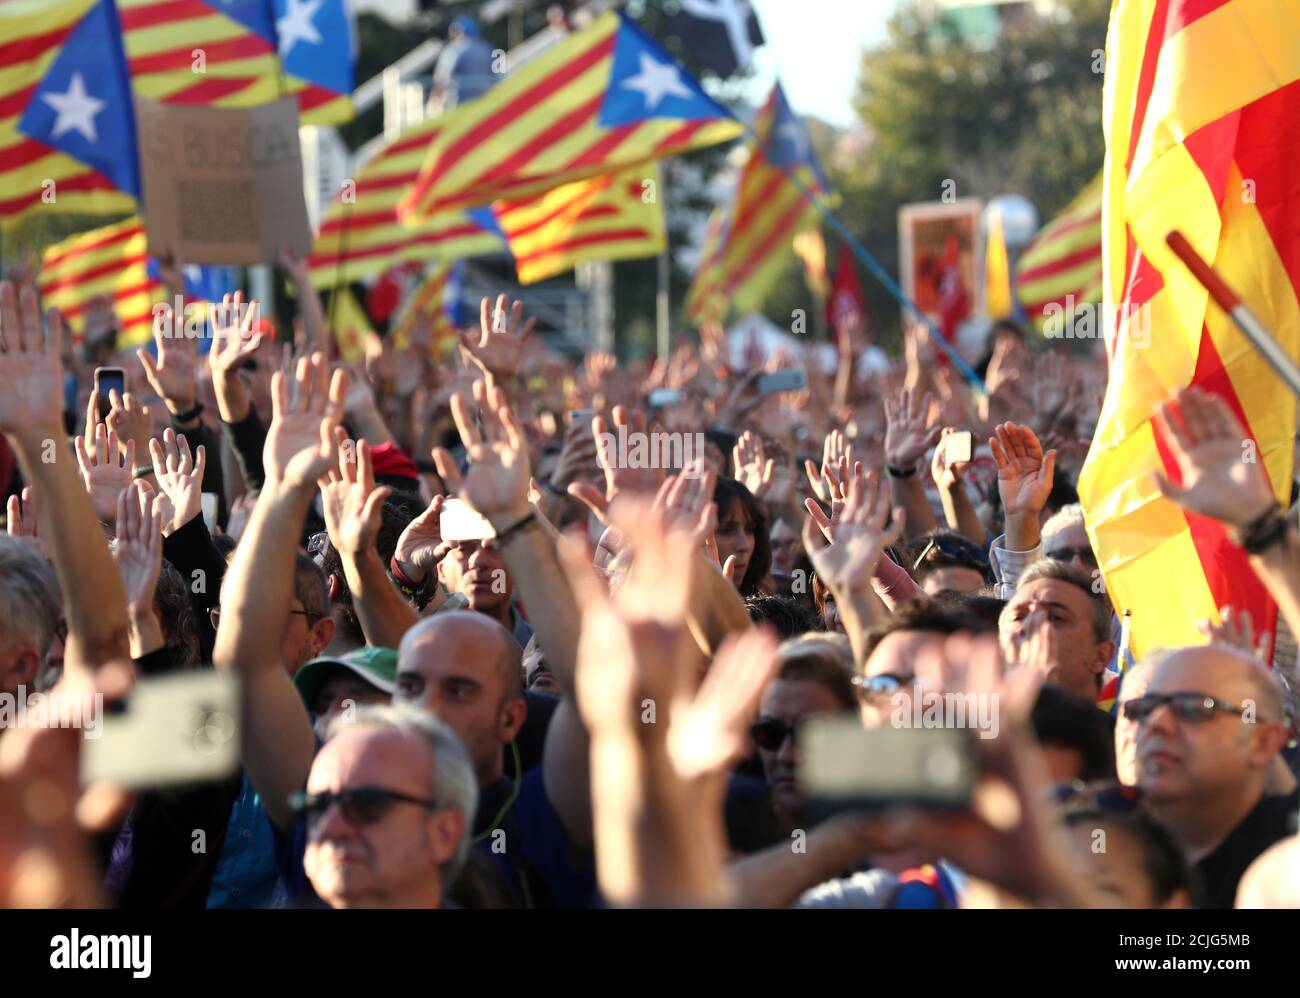 Katalanische Demonstranten, die sich für die Unabhängigkeit einsetzen, heben ihre Hände während eines Protestes, um die Freilassung inhaftierten Separatistenführer in Barcelona, Spanien, am 26. Oktober 2019 zu fordern. REUTERS/Sergio Perez Stockfoto